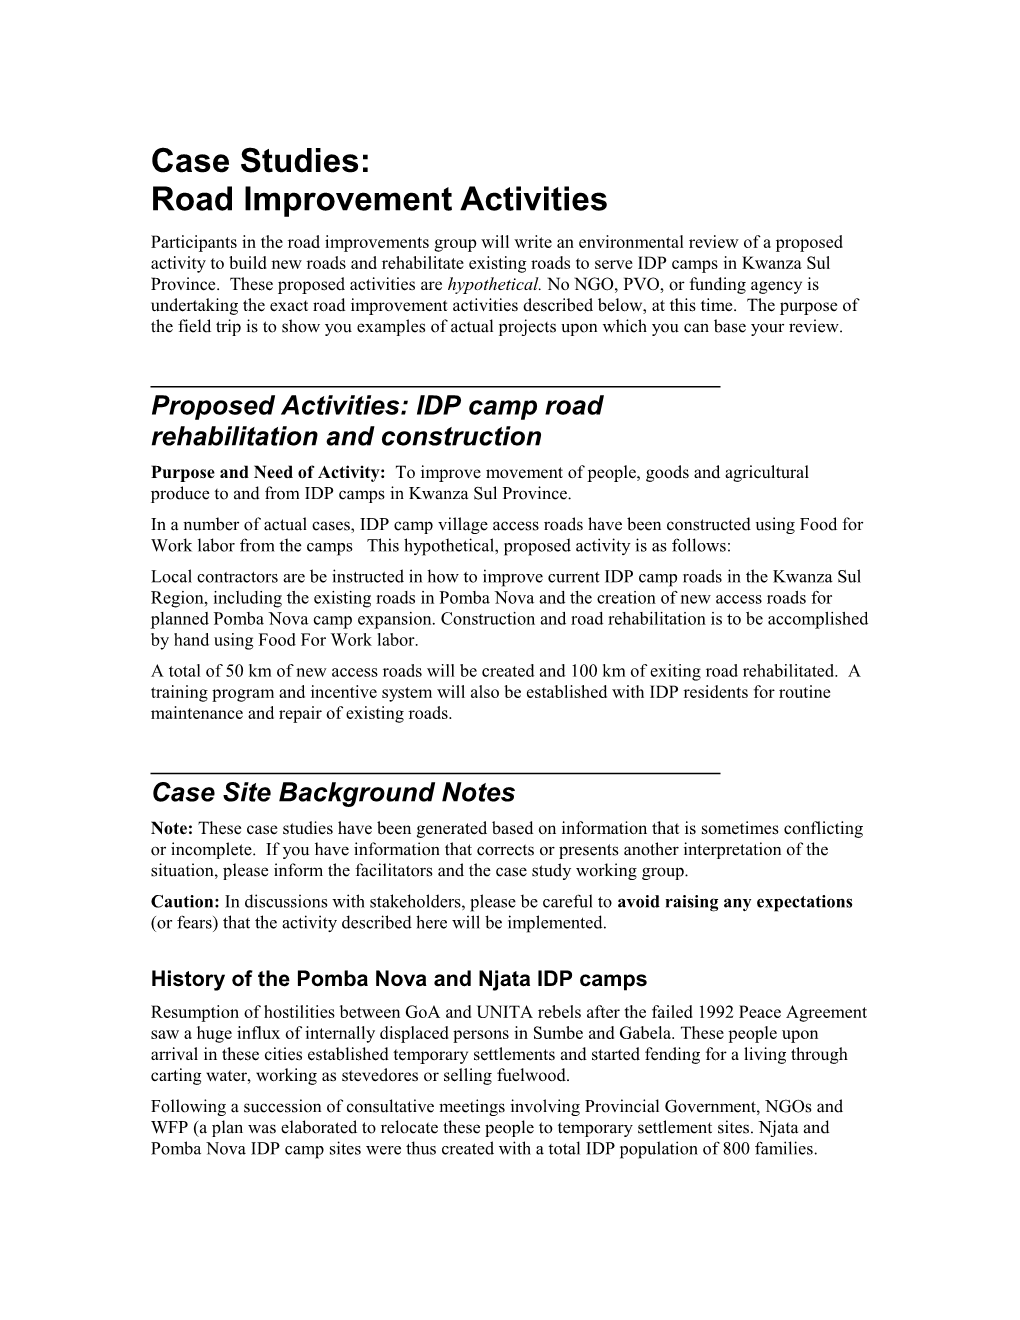 Case Studies:Road Improvement Activities